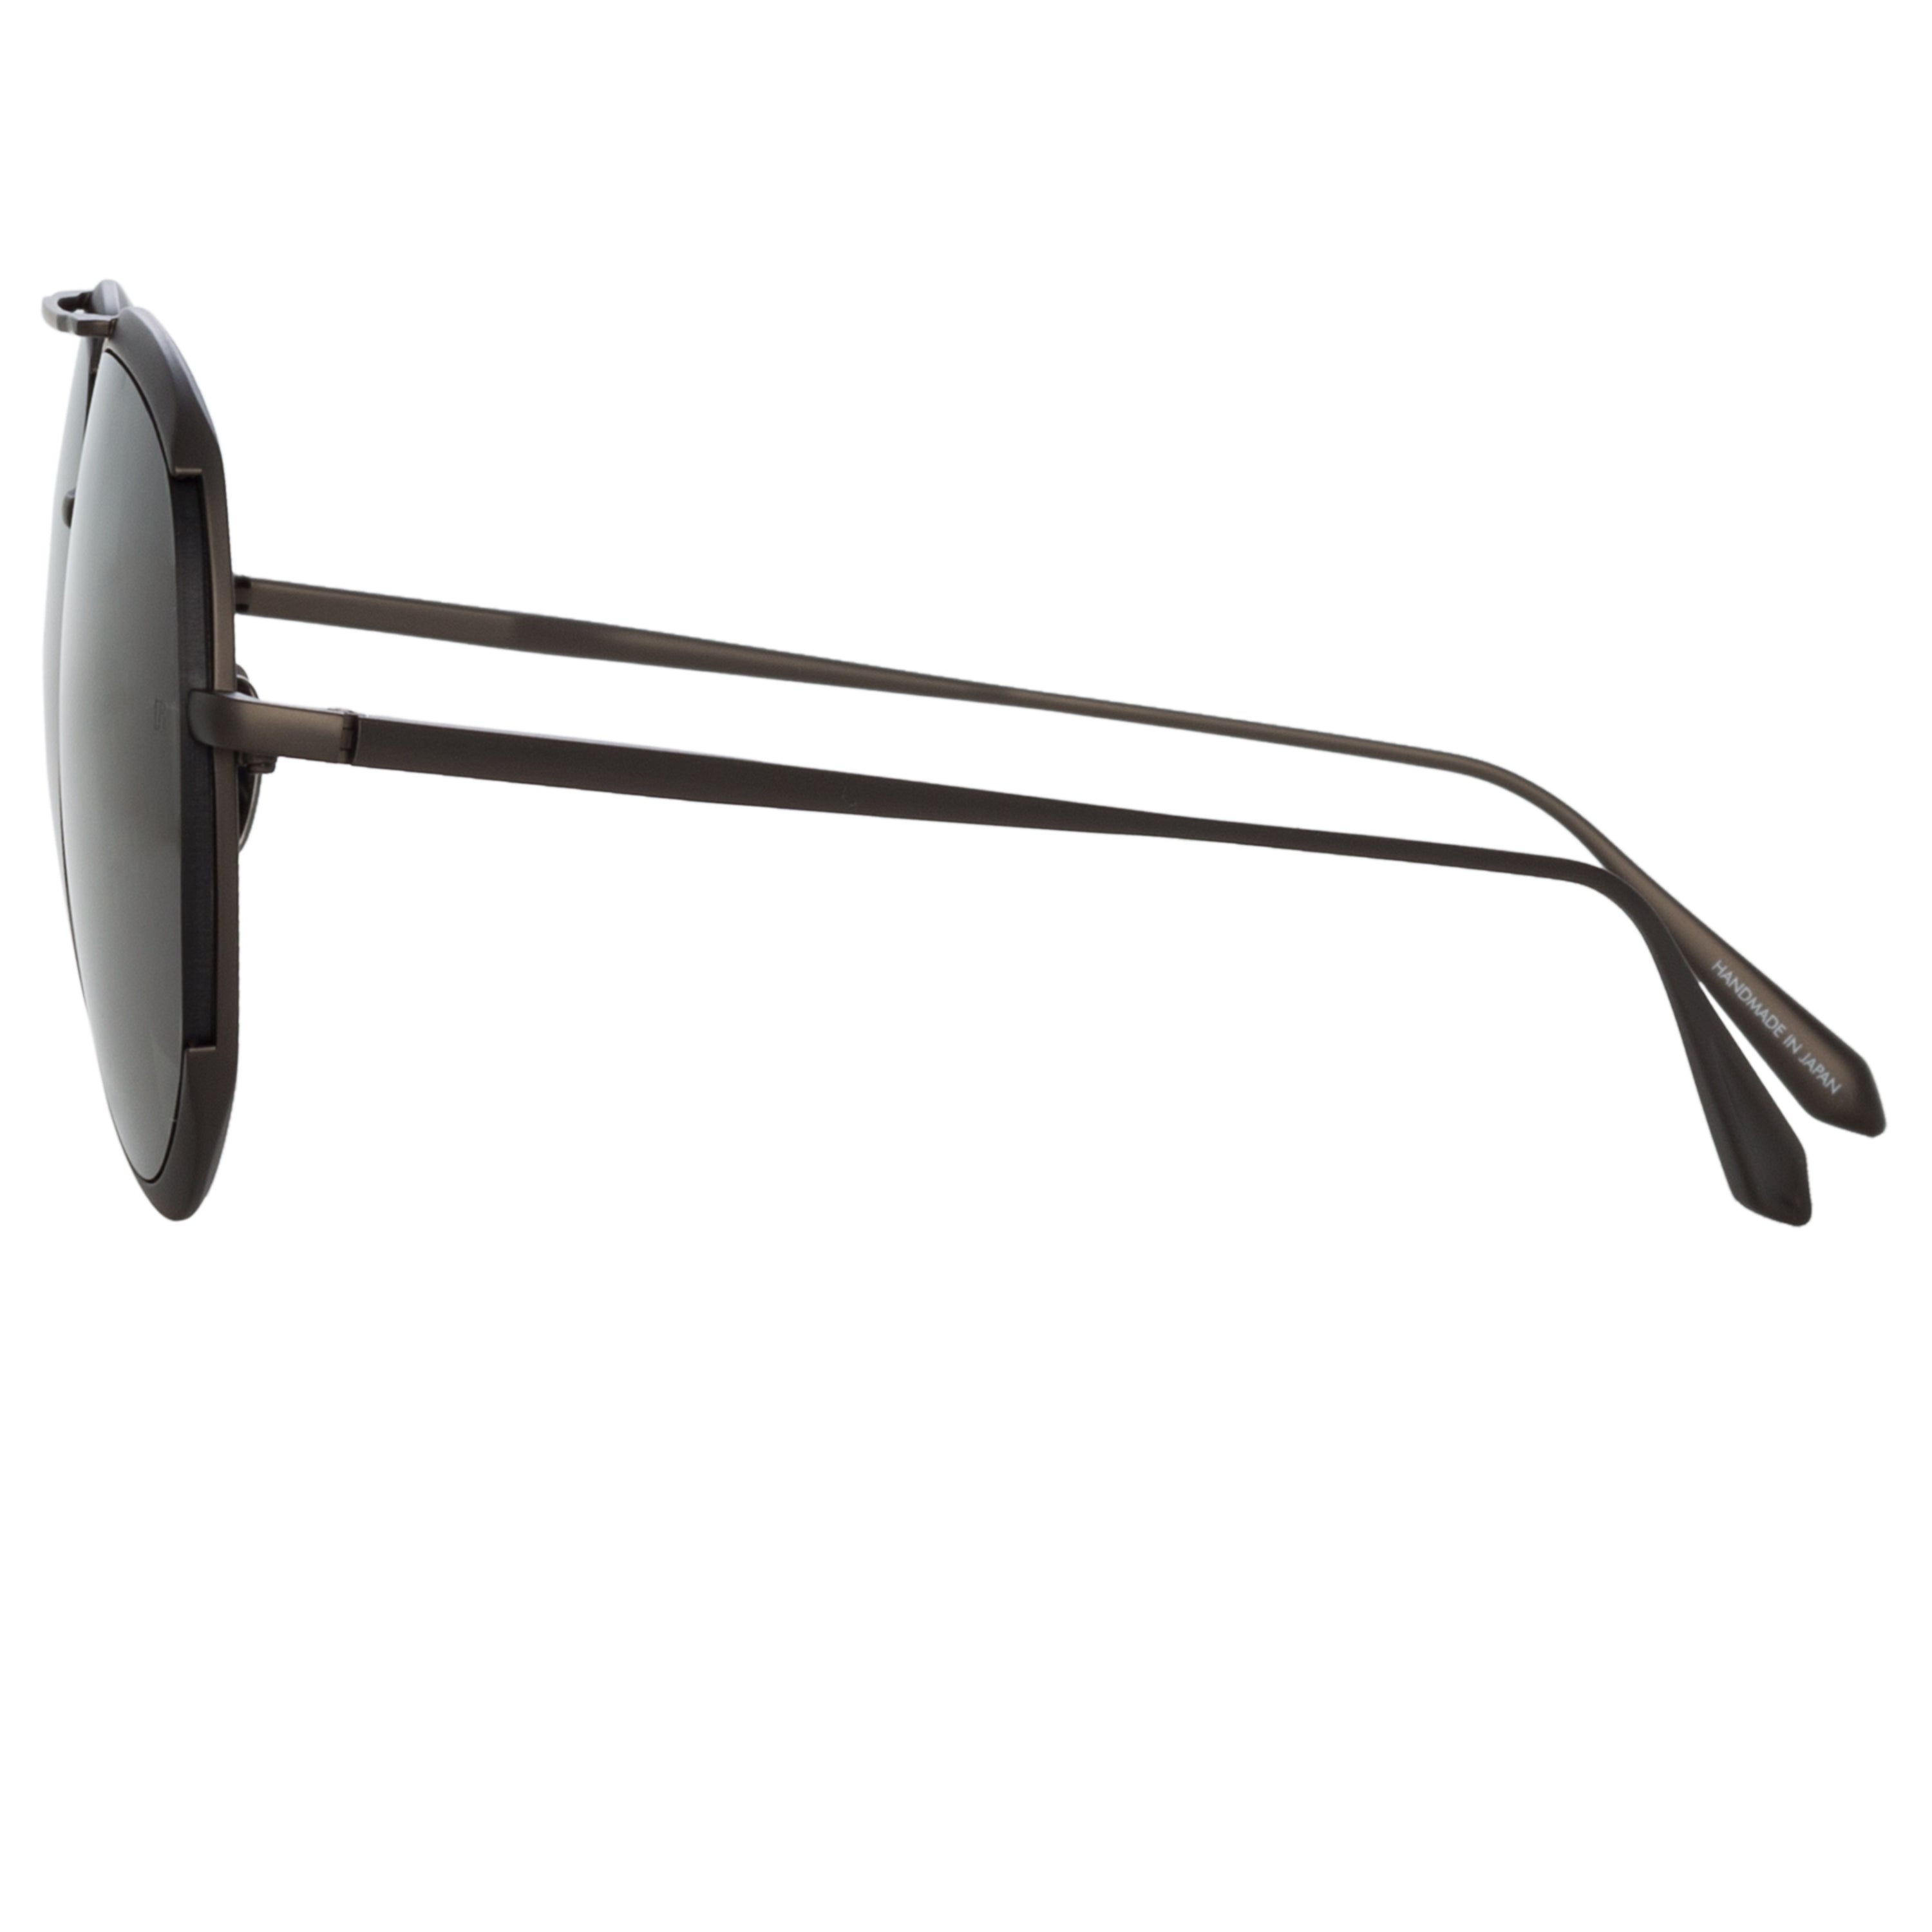 Matisse Aviator Sunglasses in Nickel by LINDA FARROW – LINDA 